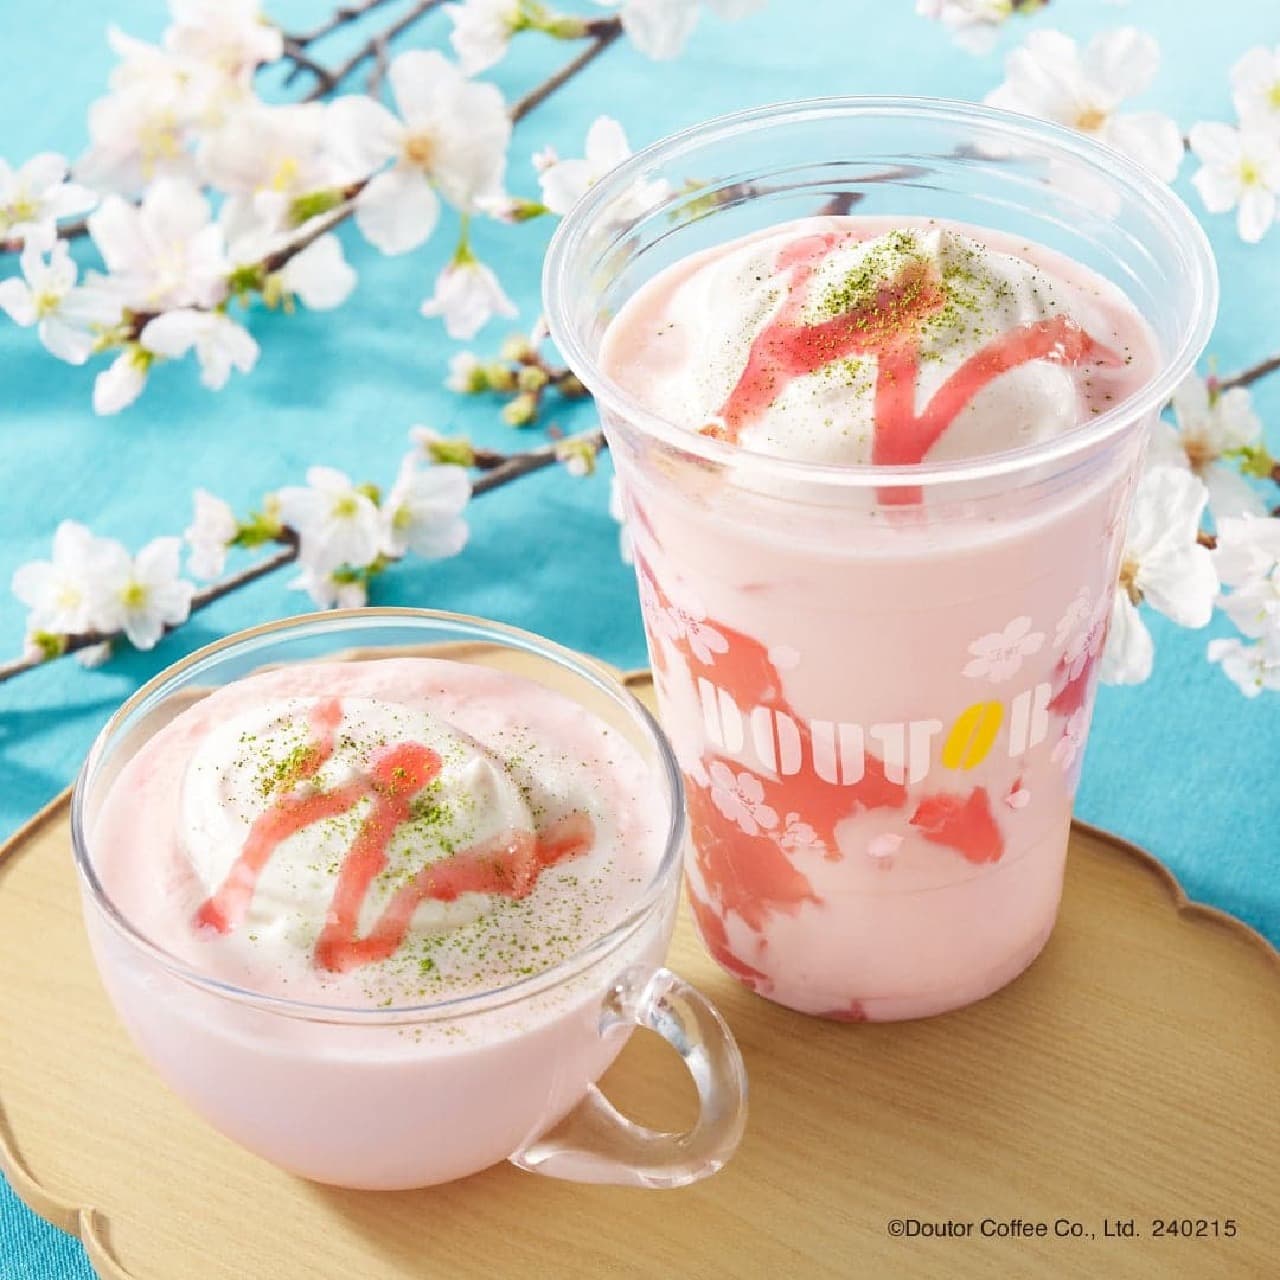 ドトール 桜をテーマにした新商品「桜オレ」「桜香るパリパリチョコミルクレープ」「桜バウムクーヘン」など 画像1